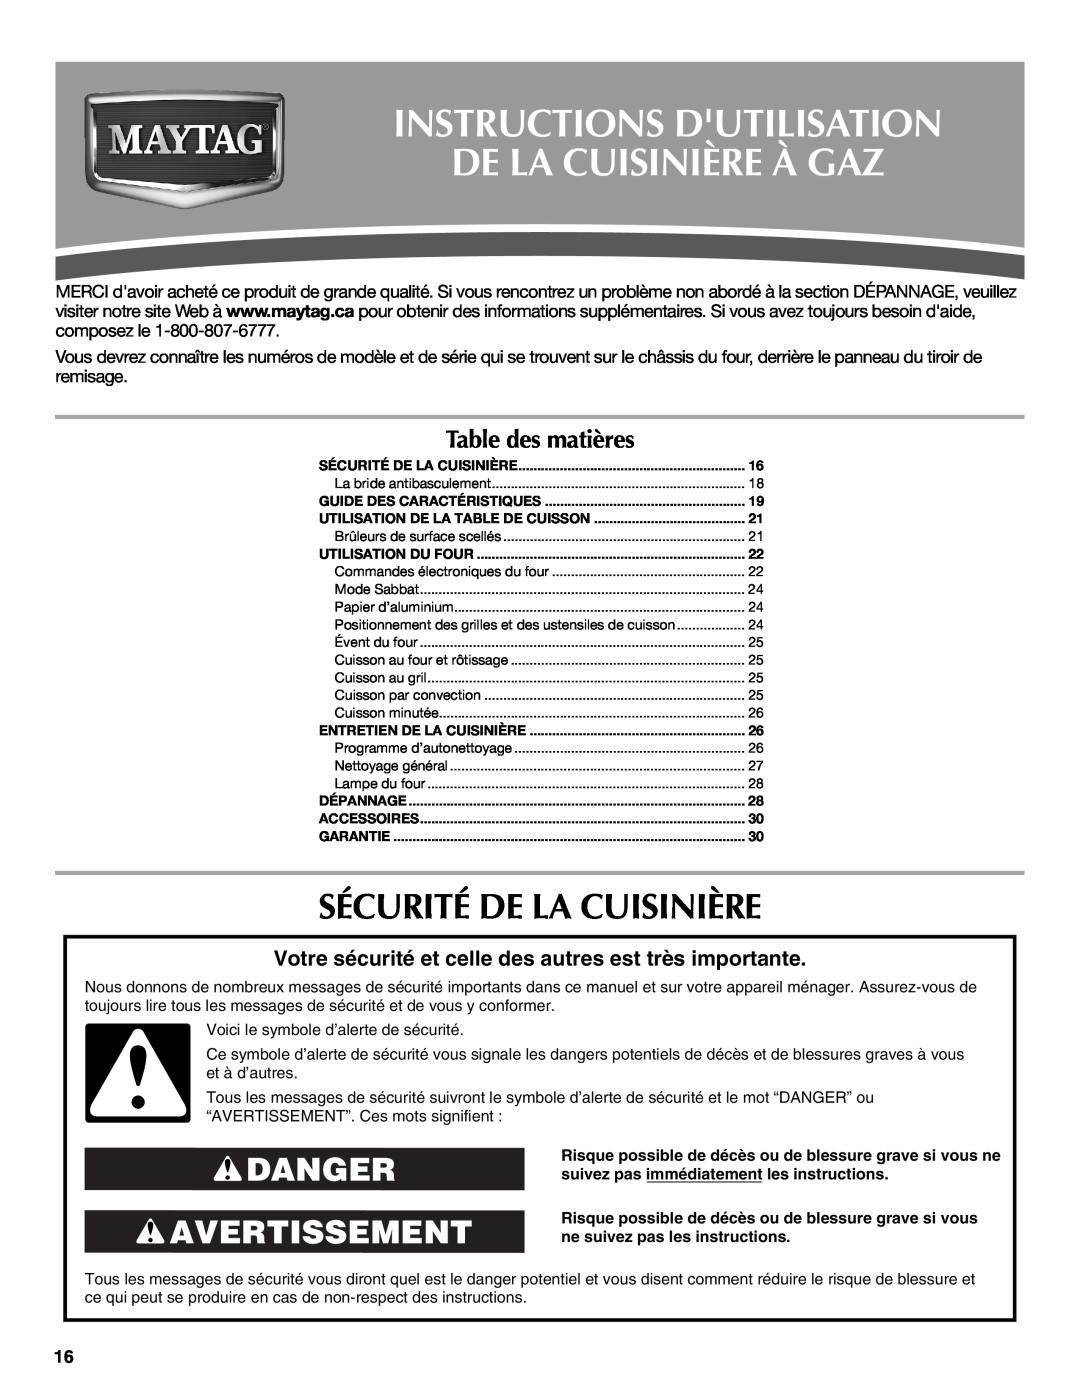 Maytag W10239464A Instructions Dutilisation De La Cuisinière À Gaz, Sécurité De La Cuisinière, Danger Avertissement 